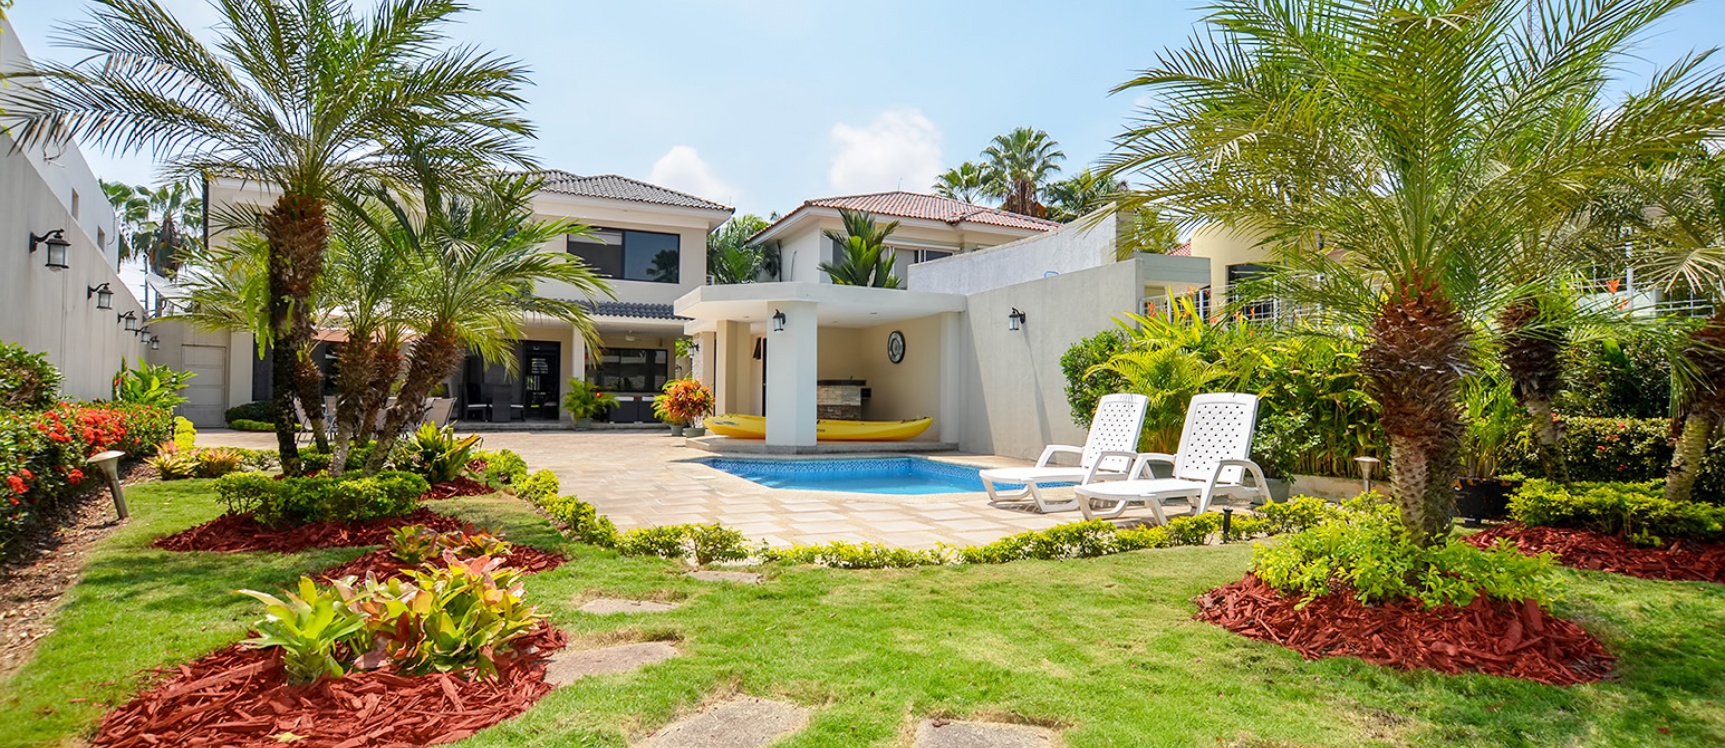 GeoBienes - Casa en venta en Lago Sol sector vía a Samborondón - Plusvalia Guayaquil Casas de venta y alquiler Inmobiliaria Ecuador